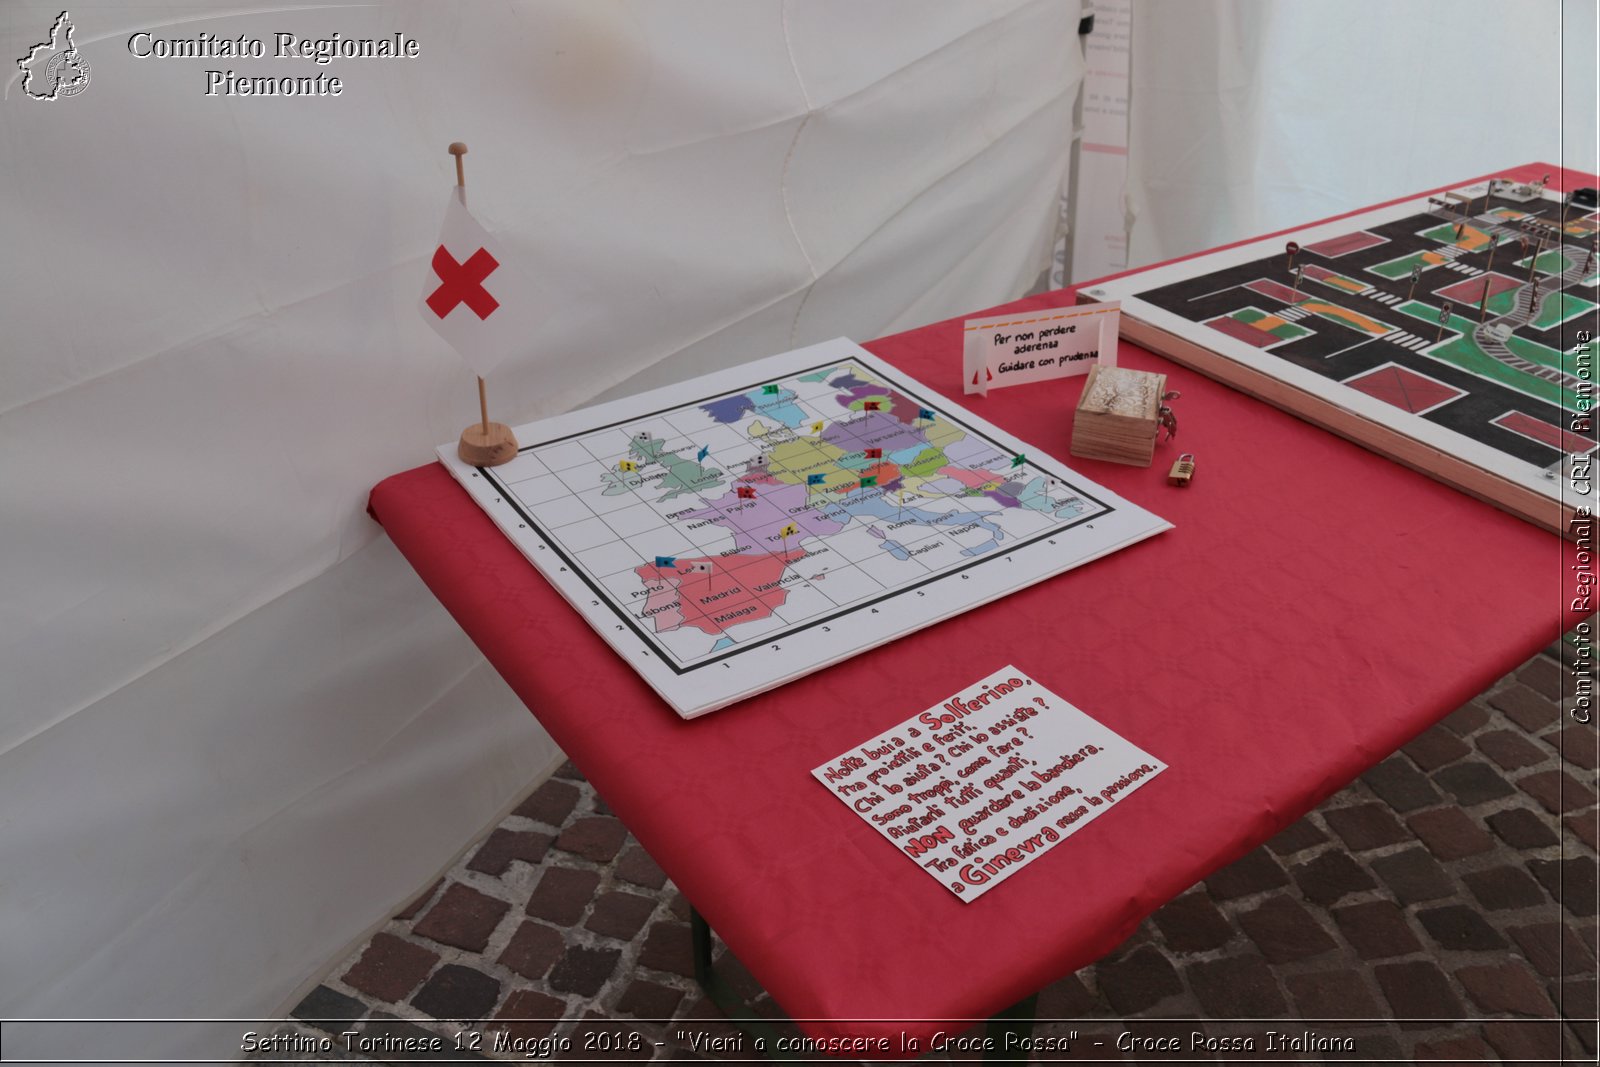 Settimo Torinese 12 Maggio 2018 - "Vieni a conoscere la Croce Rossa" - Croce Rossa Italiana- Comitato Regionale del Piemonte